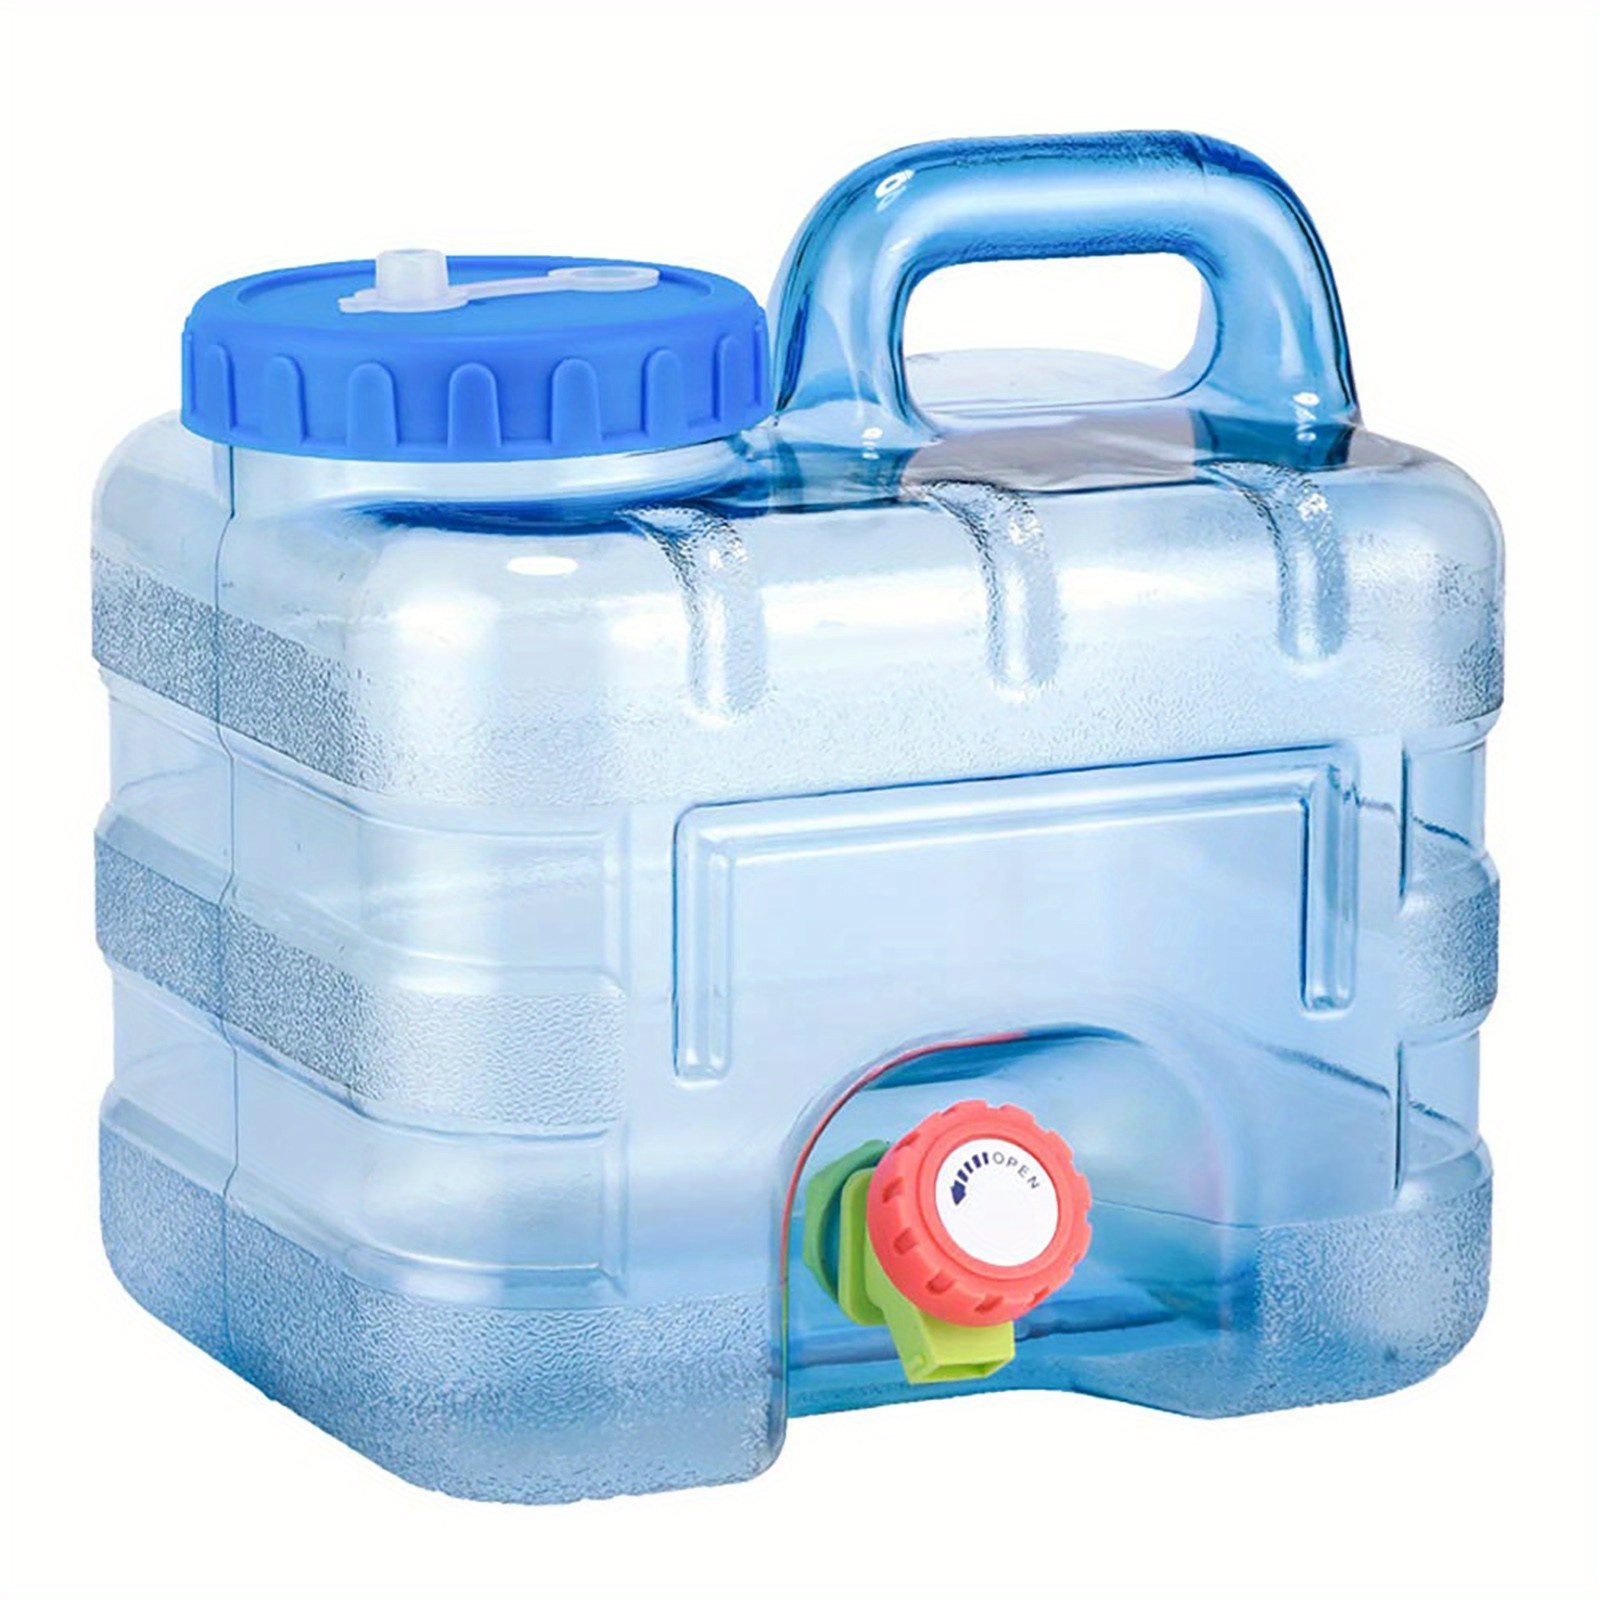 1pc Outdoor Wasser Eimer Tragbare Tank Container Mit Wasserhahn Für Camping  Trinkwasser Camping Lagerung Eimer Blau, 5-22L